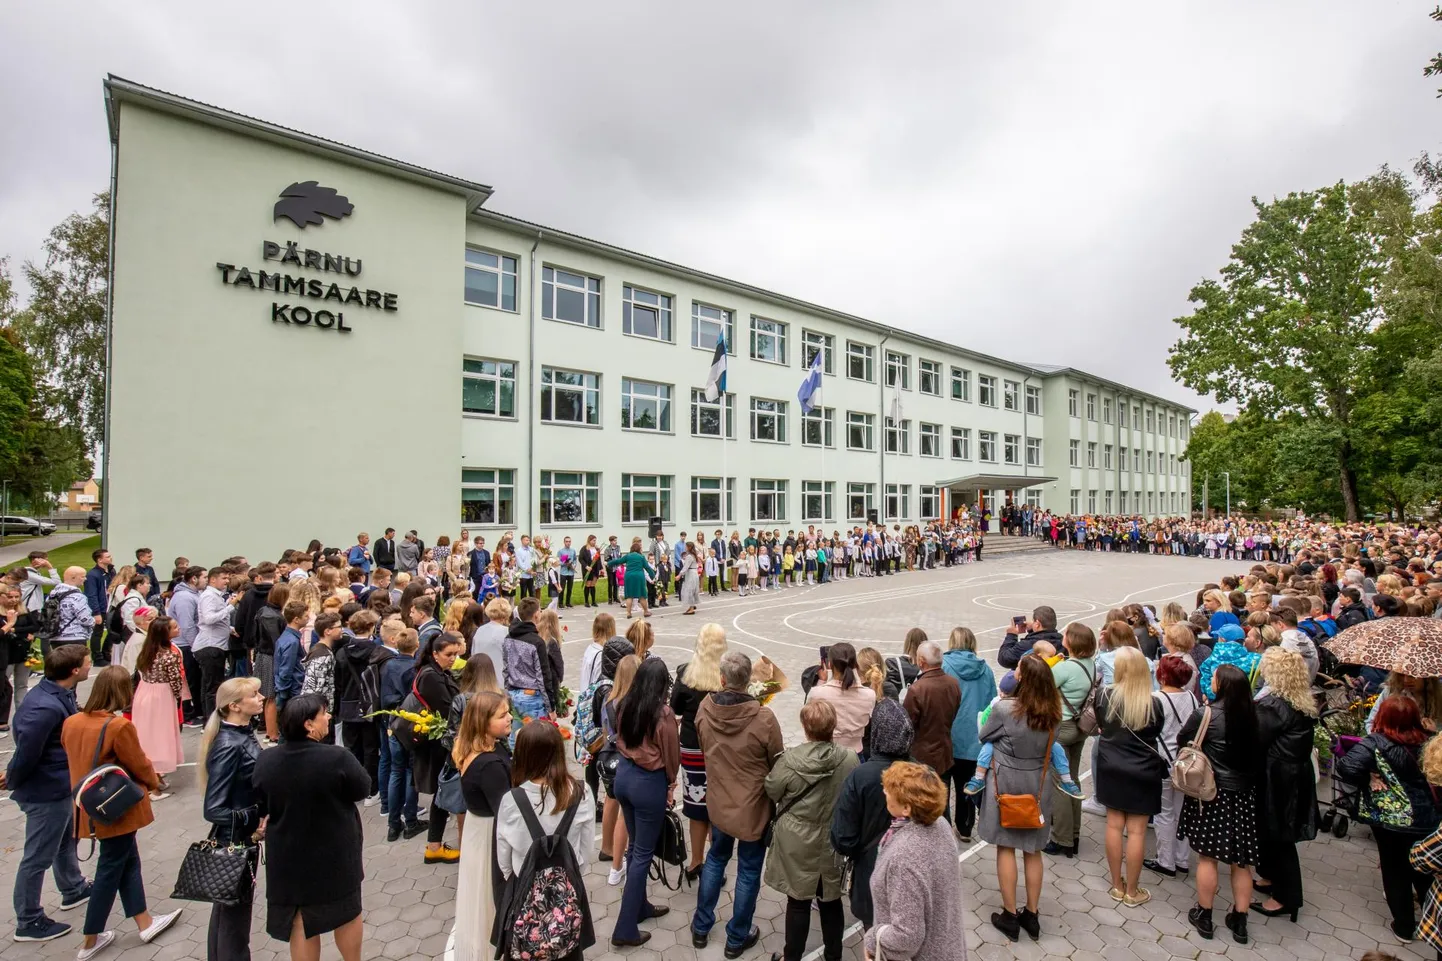 Pärnu Tammsaare koolis õpetatakse nii eesti kui vene keeles, kuid mõne aastaga kujuneb sellest täielikult eestikeelne kool.